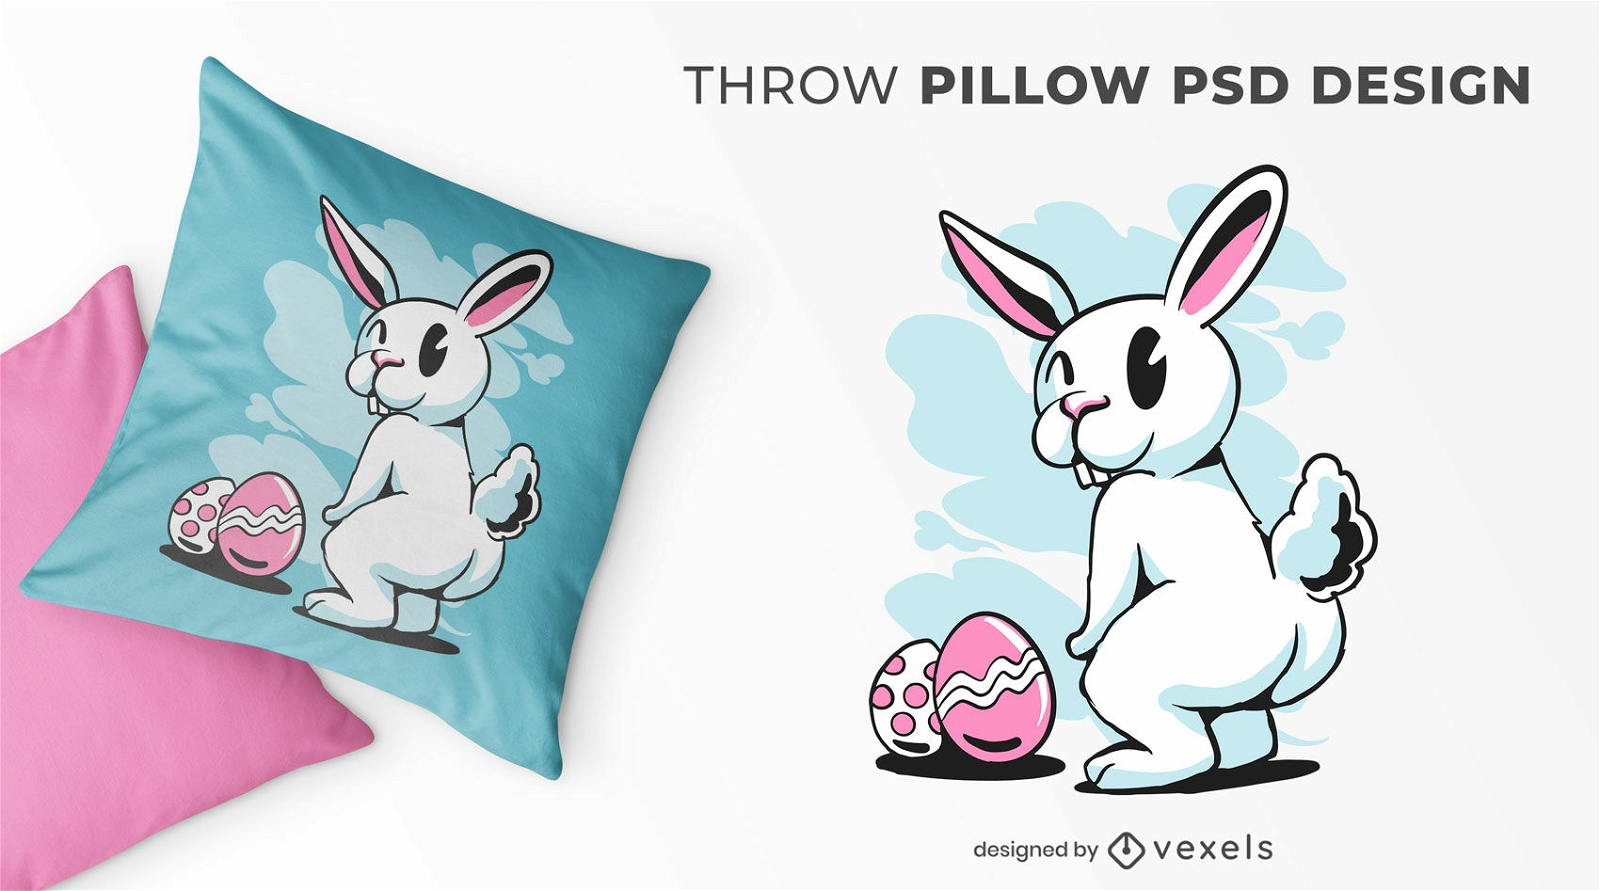 Diseño de almohada de Pascua con conejo humorístico.